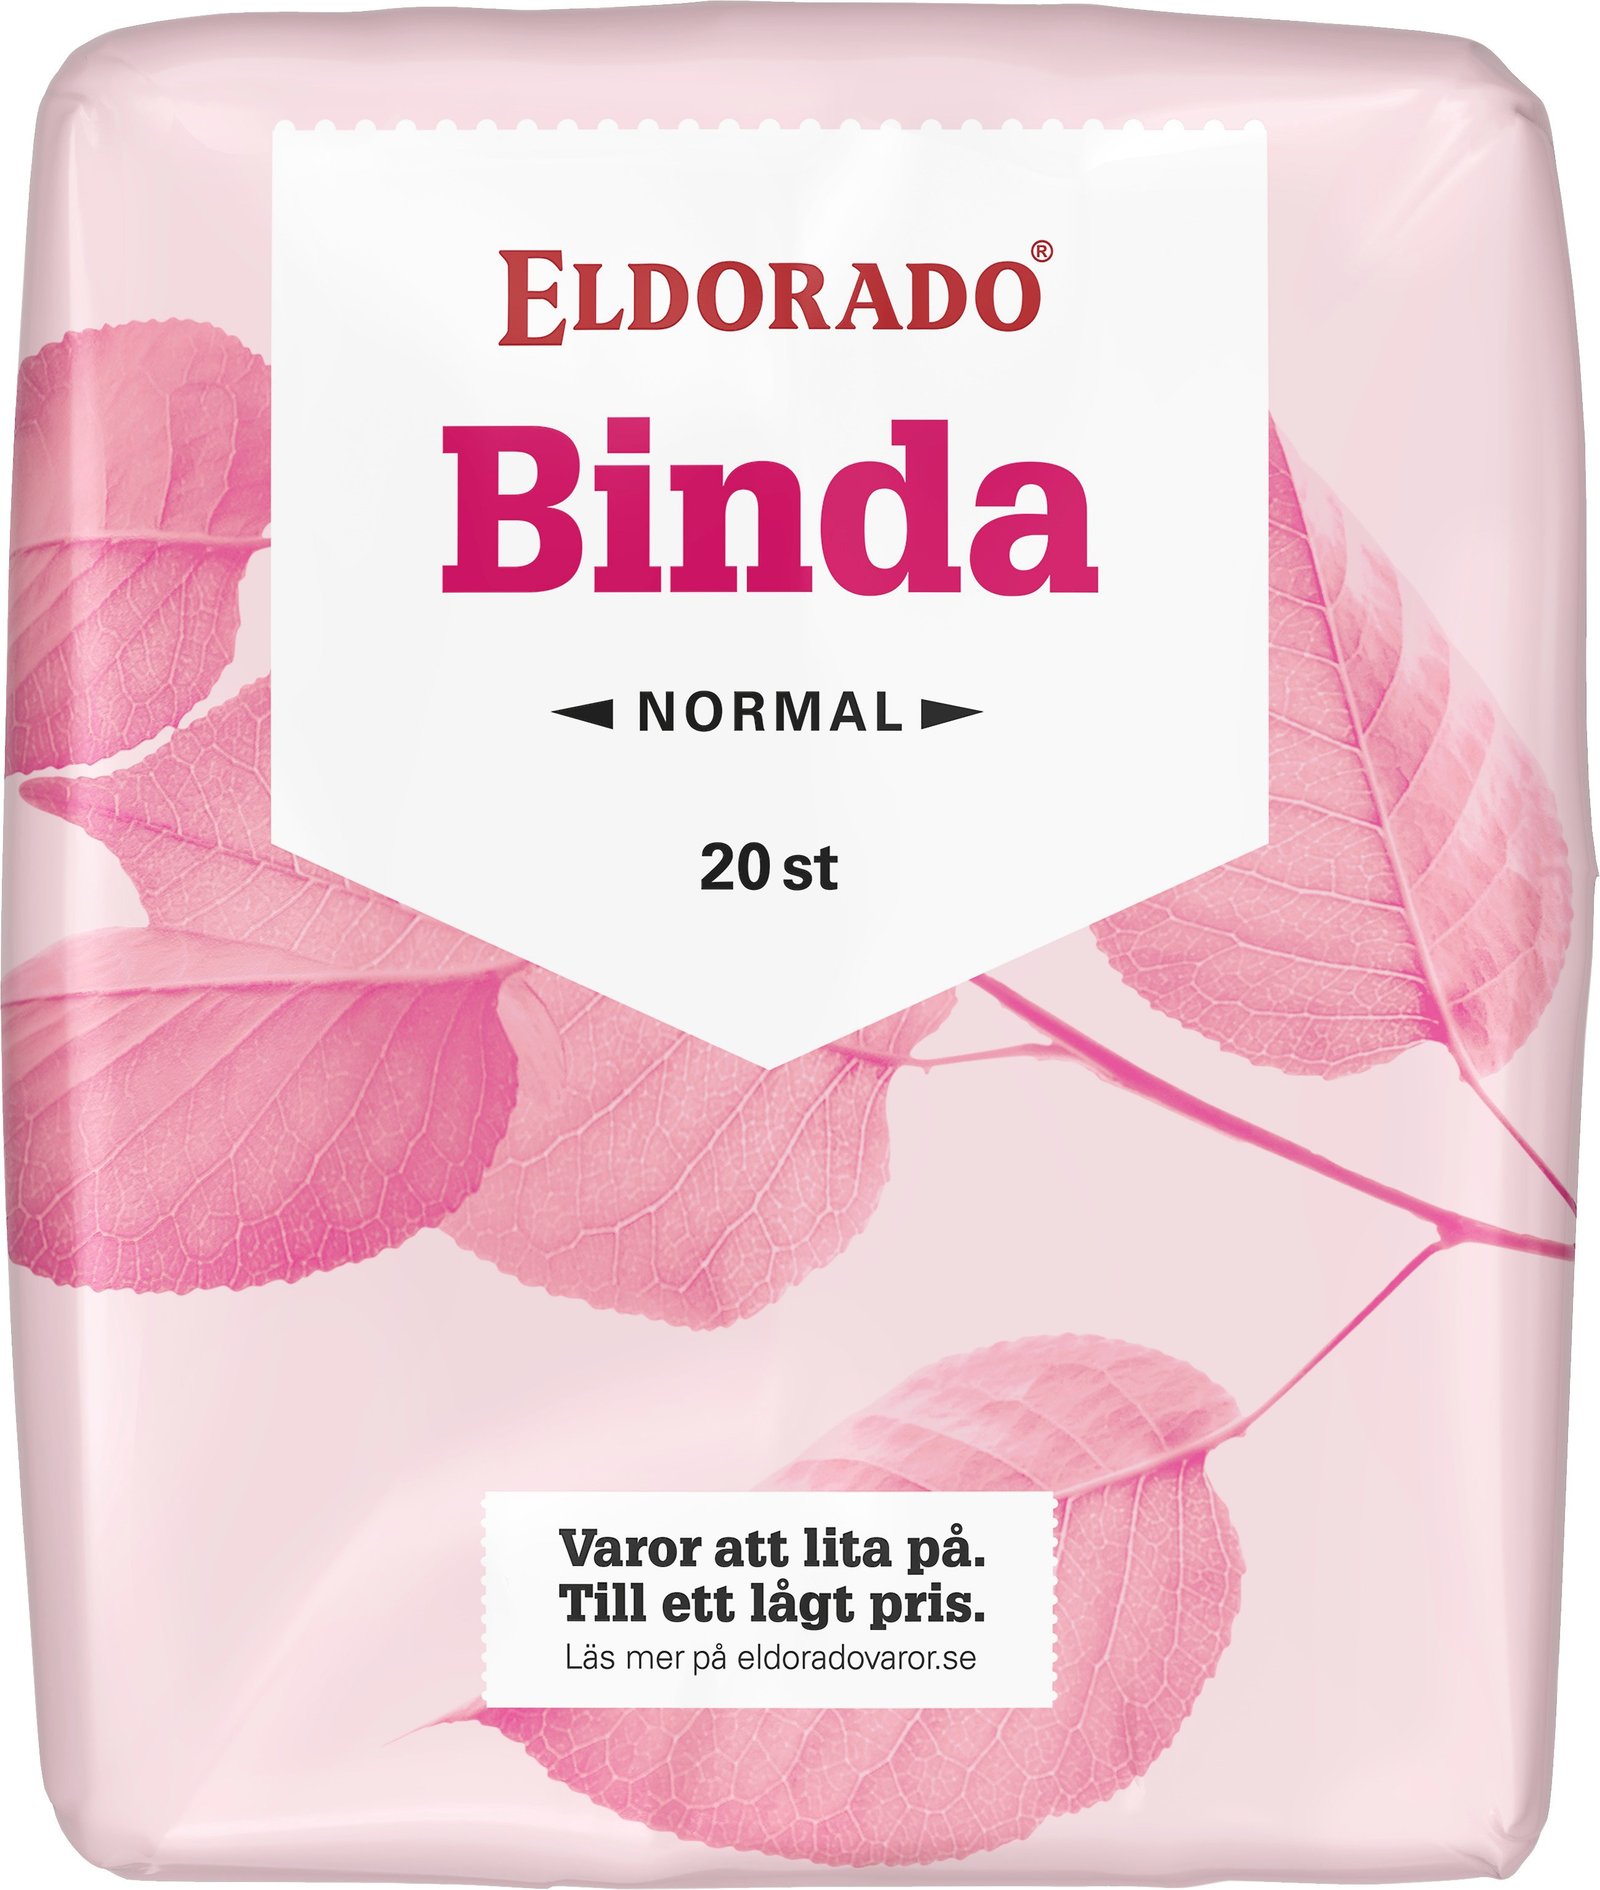 Eldorado Binda Normal 20 st